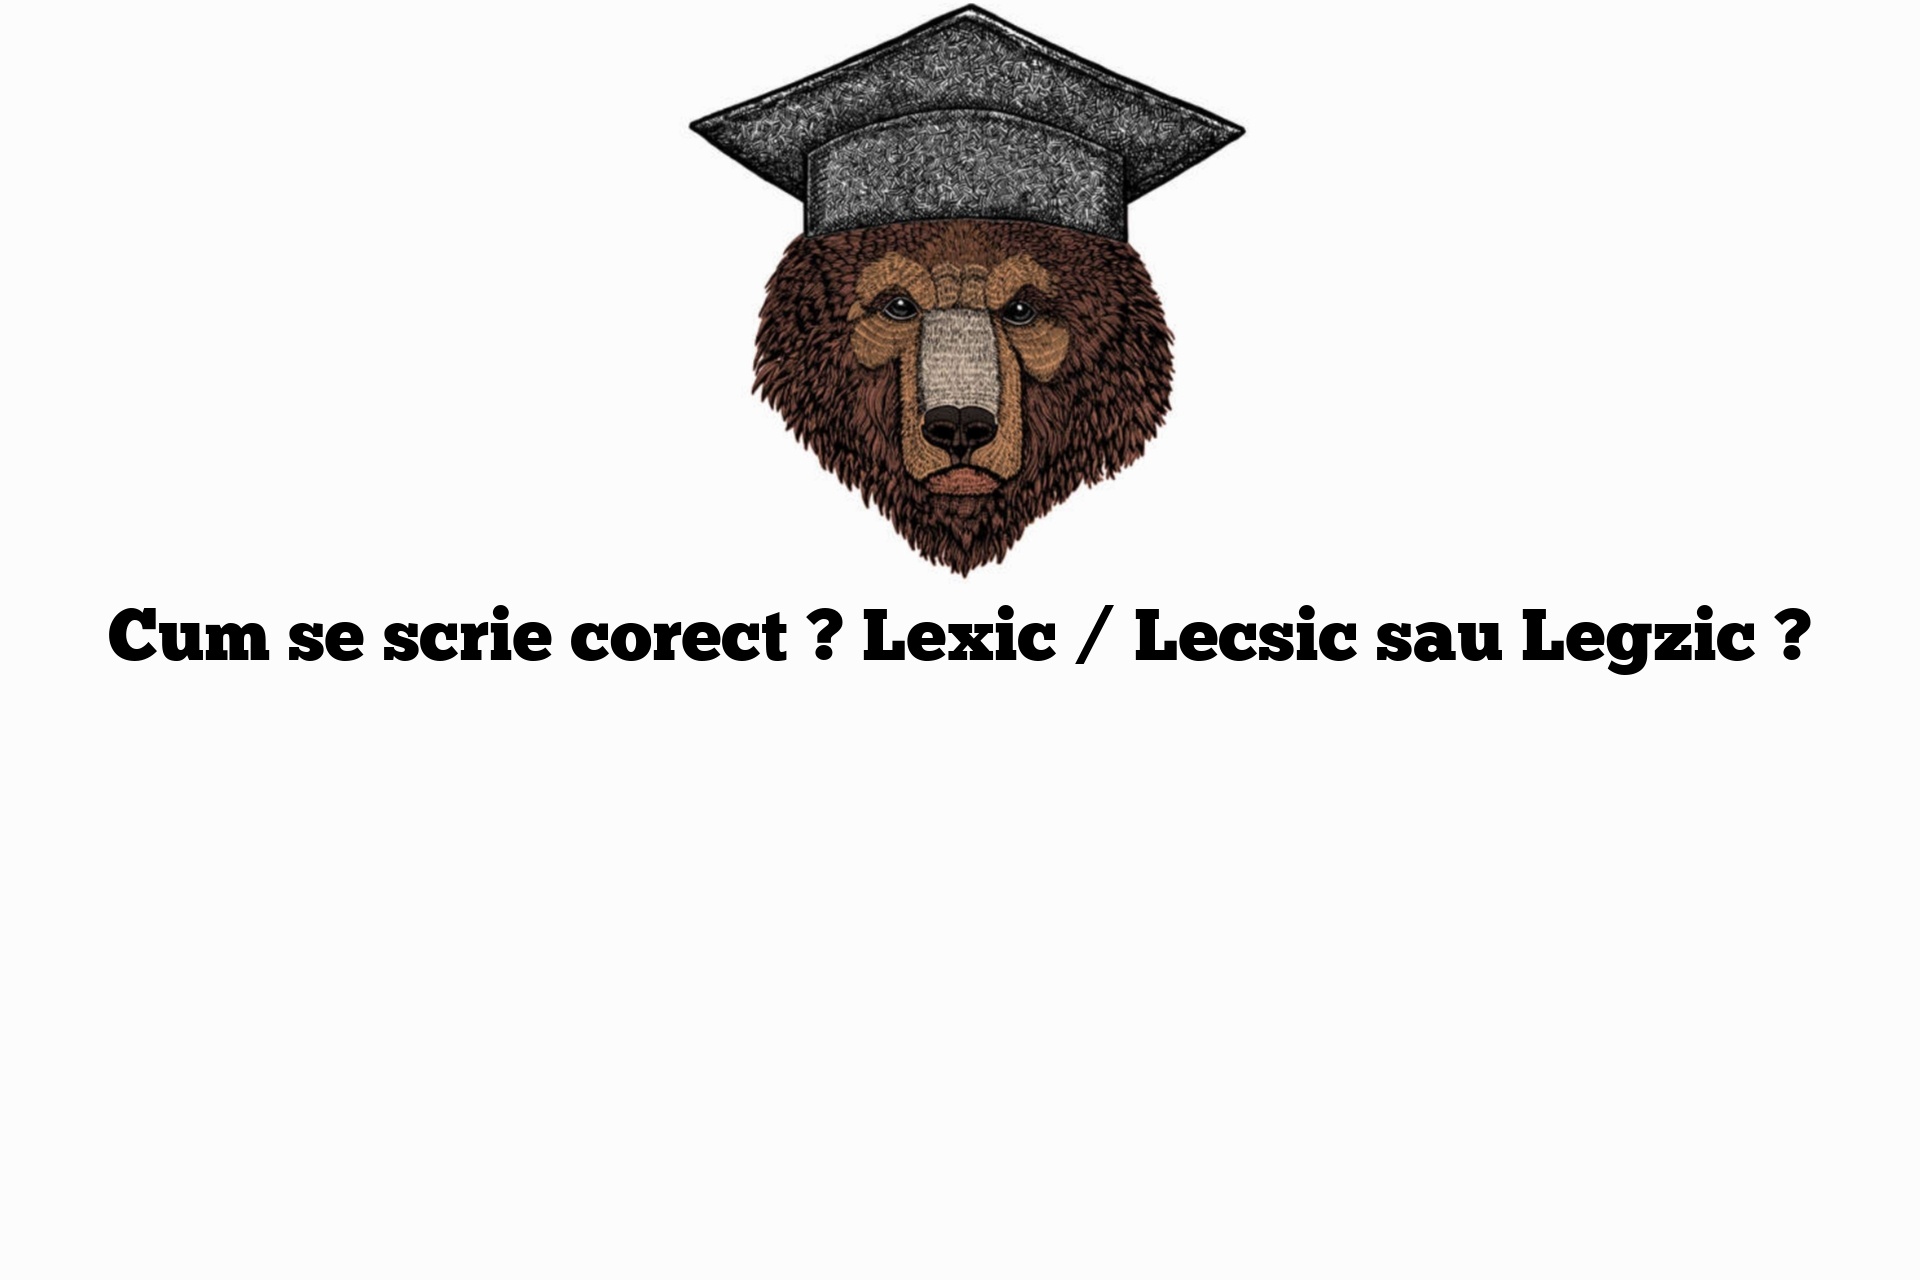 Cum se scrie corect ? Lexic / Lecsic sau Legzic ?